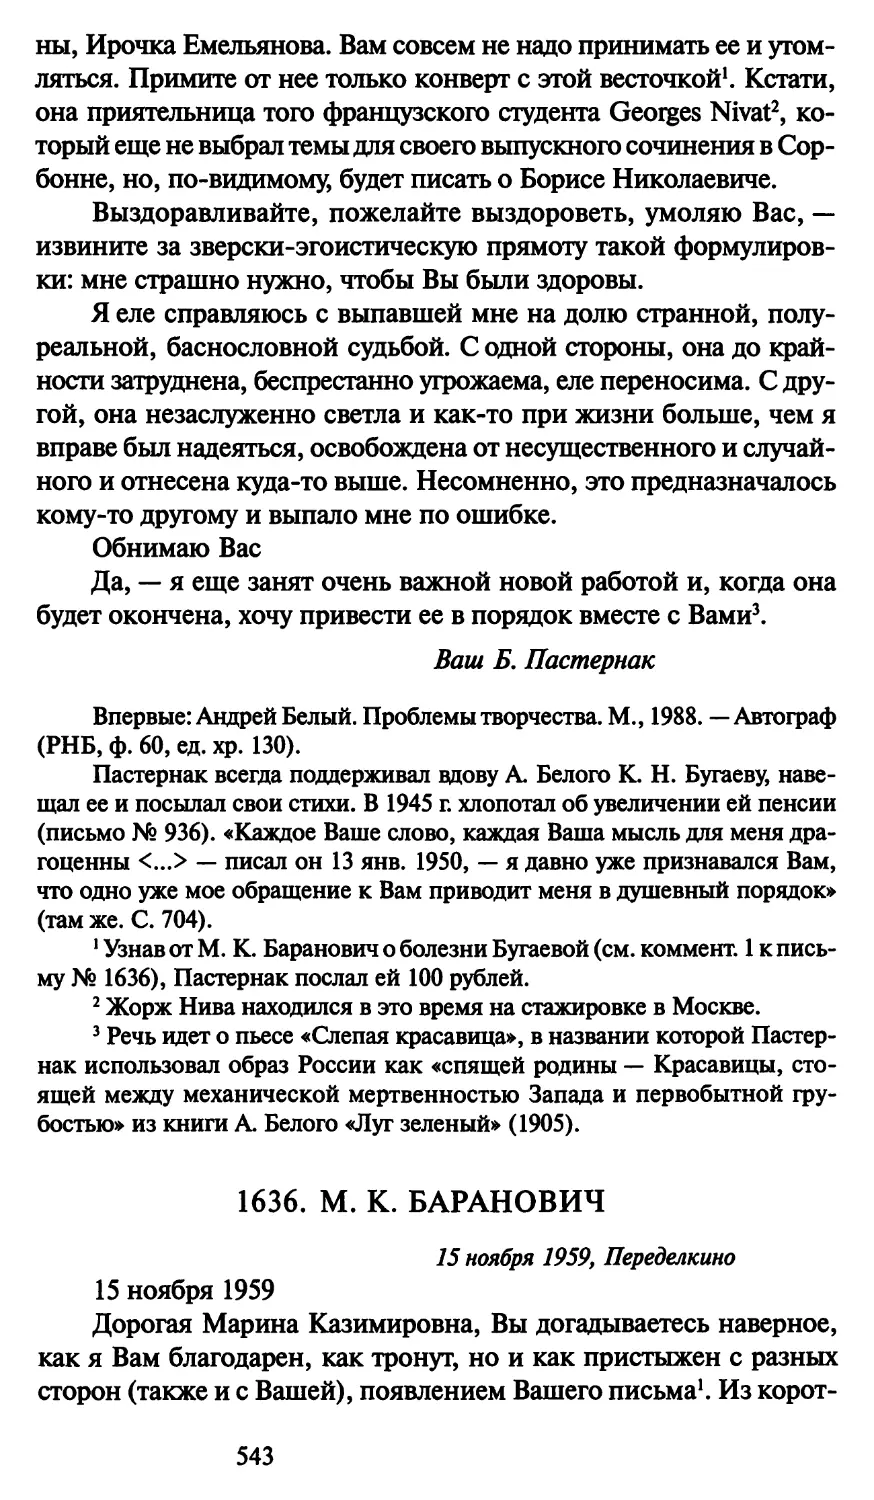 1636. М. К. Баранович 15 ноября 1959